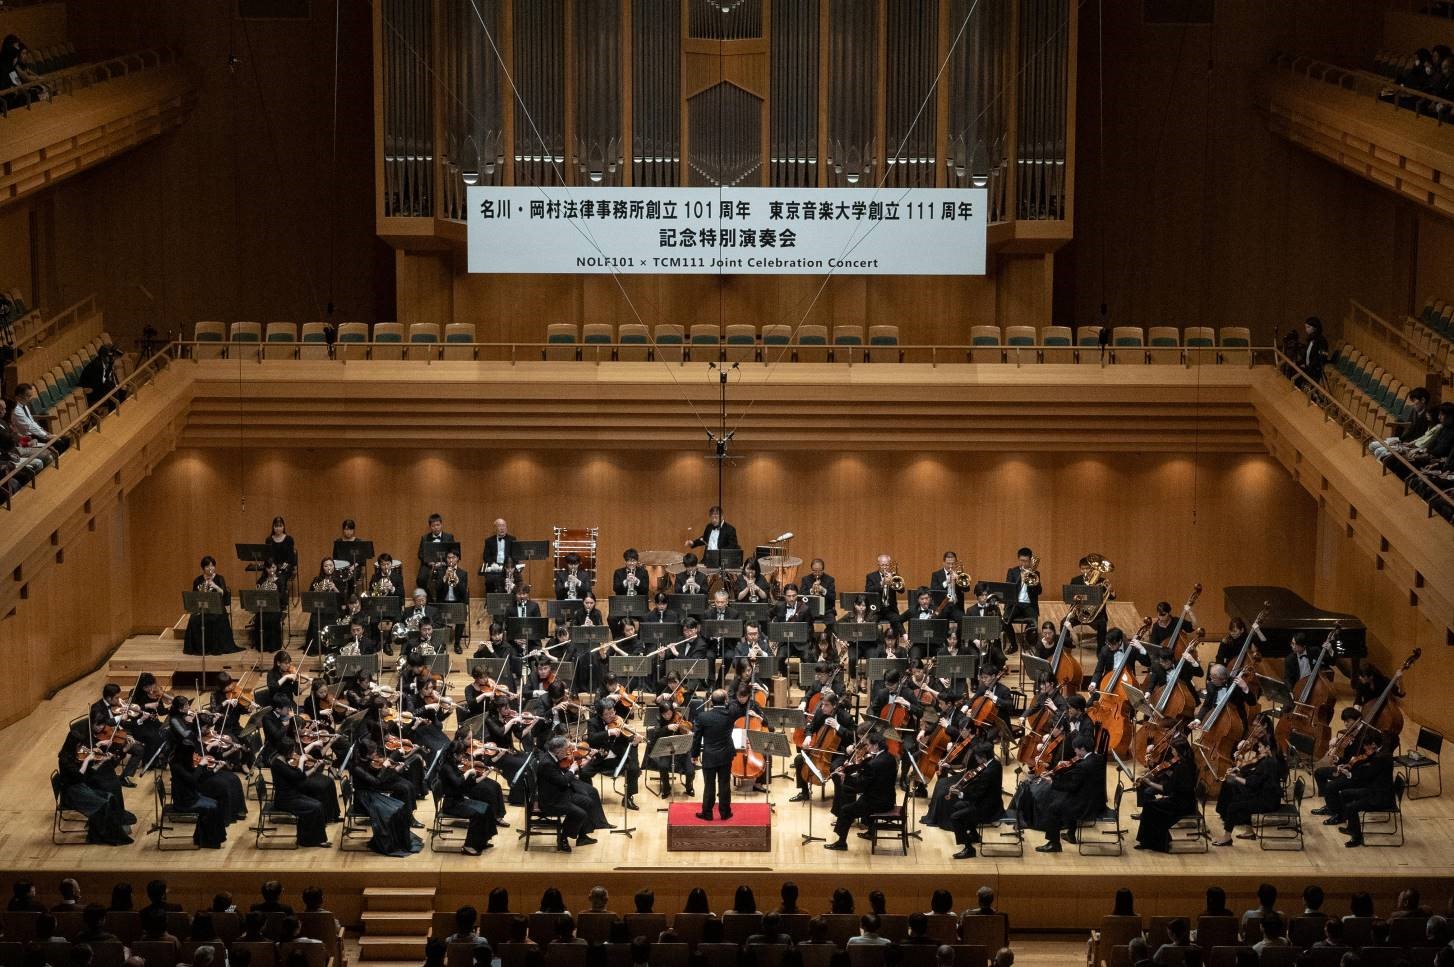 東京音楽大学創立111周年 名川・岡村法律事務所創立101周年記念 特別演奏会 TCM 111 × NOLF 101